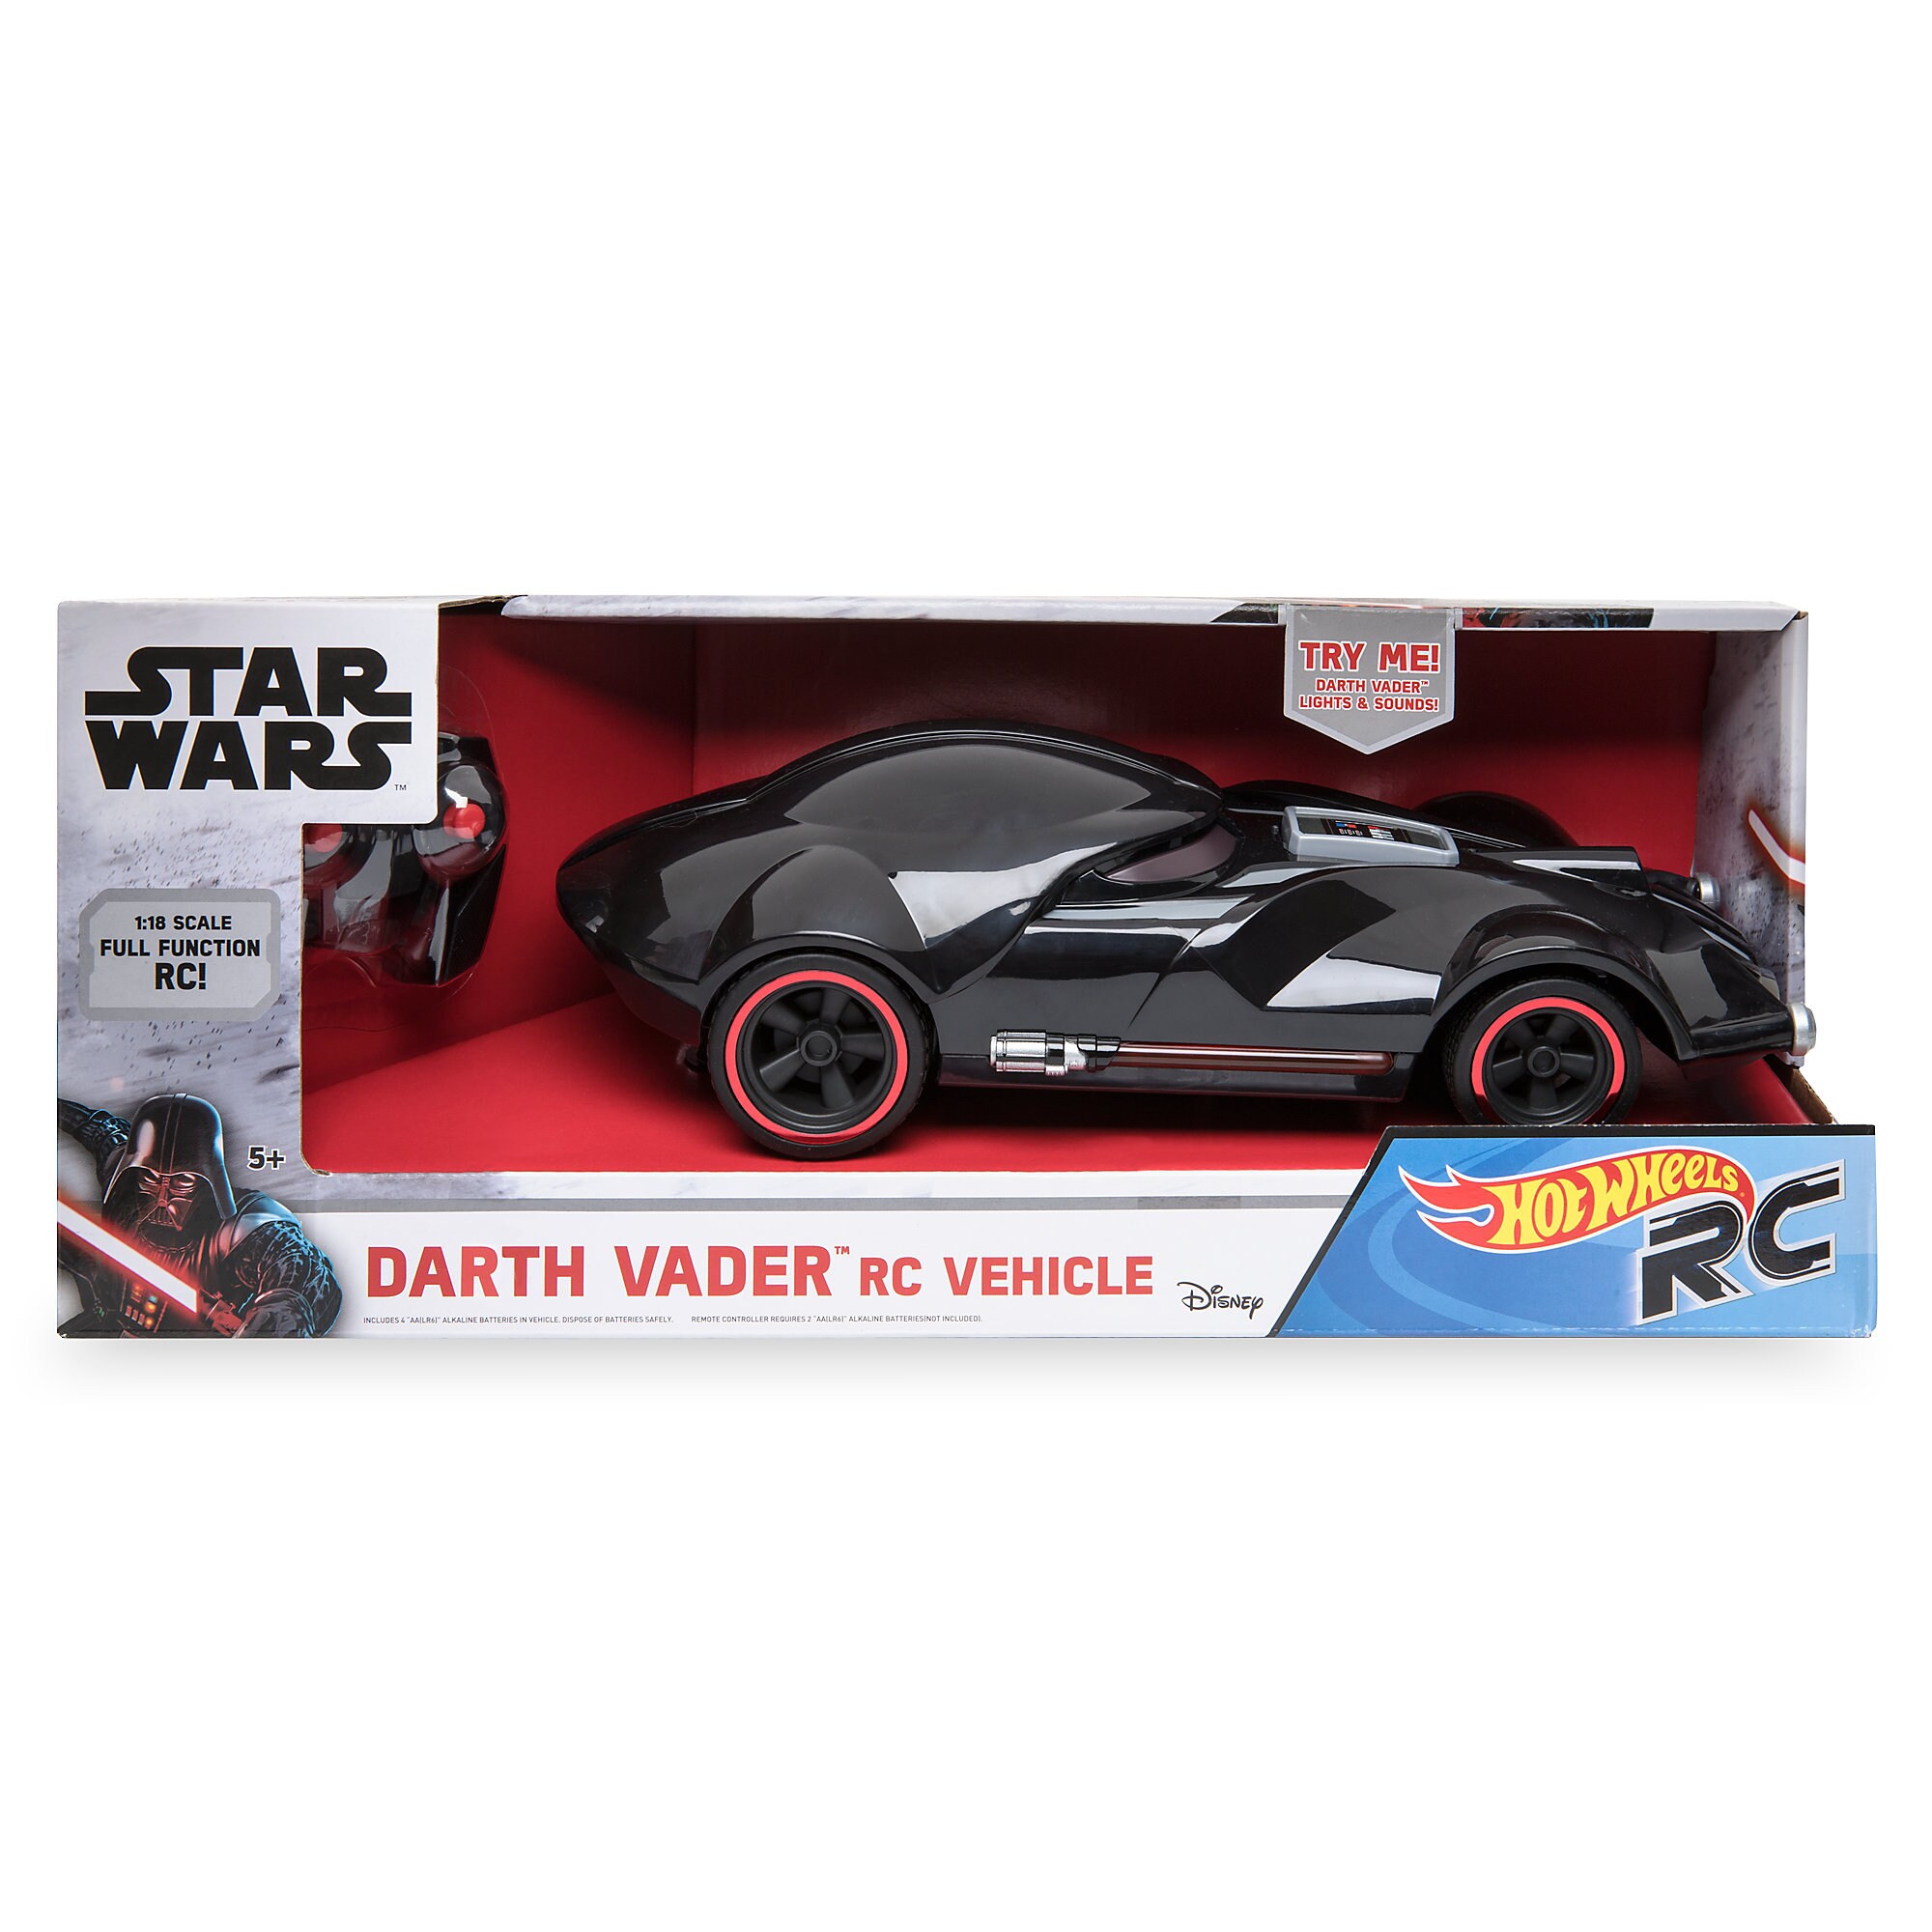 Darth Vader Hot Wheels RC Vehicle by Mattel